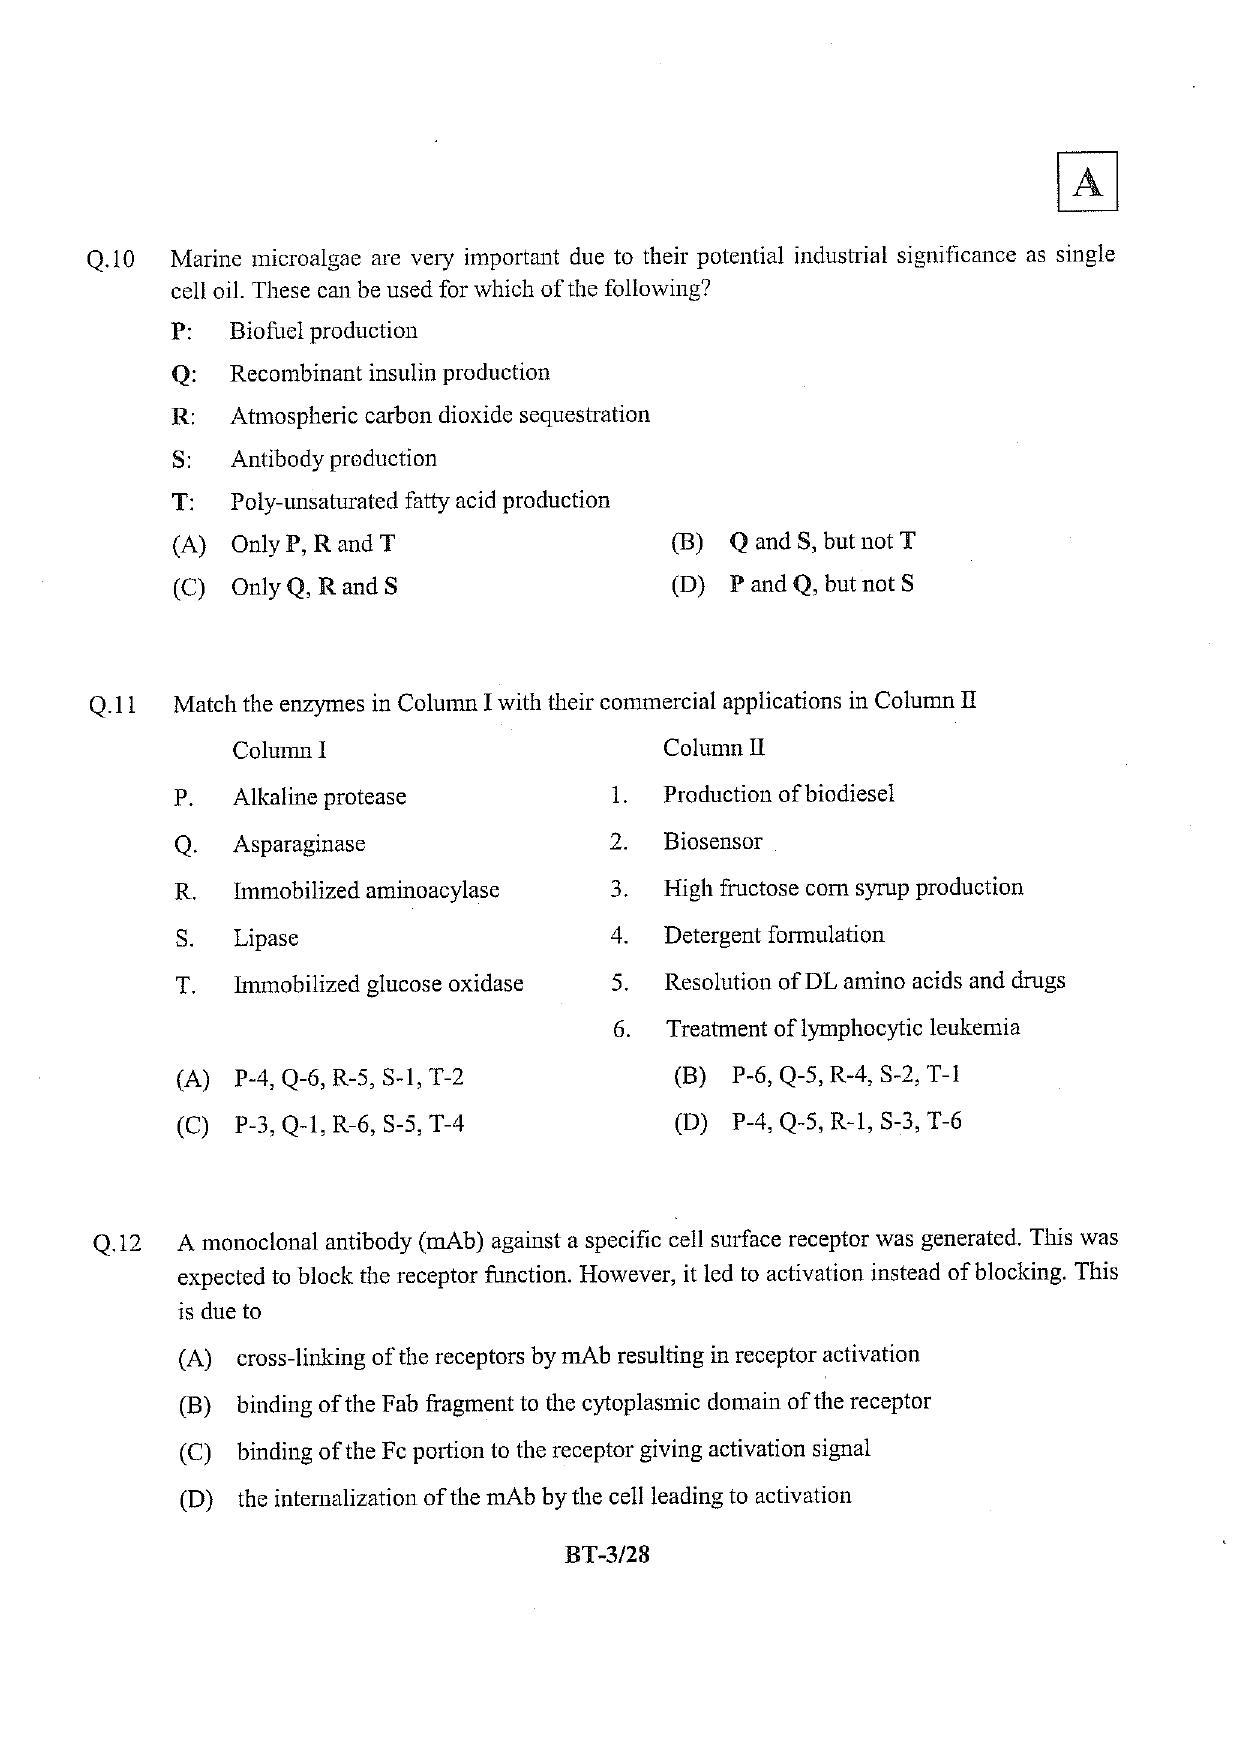 JAM 2013: BT Question Paper - Page 4